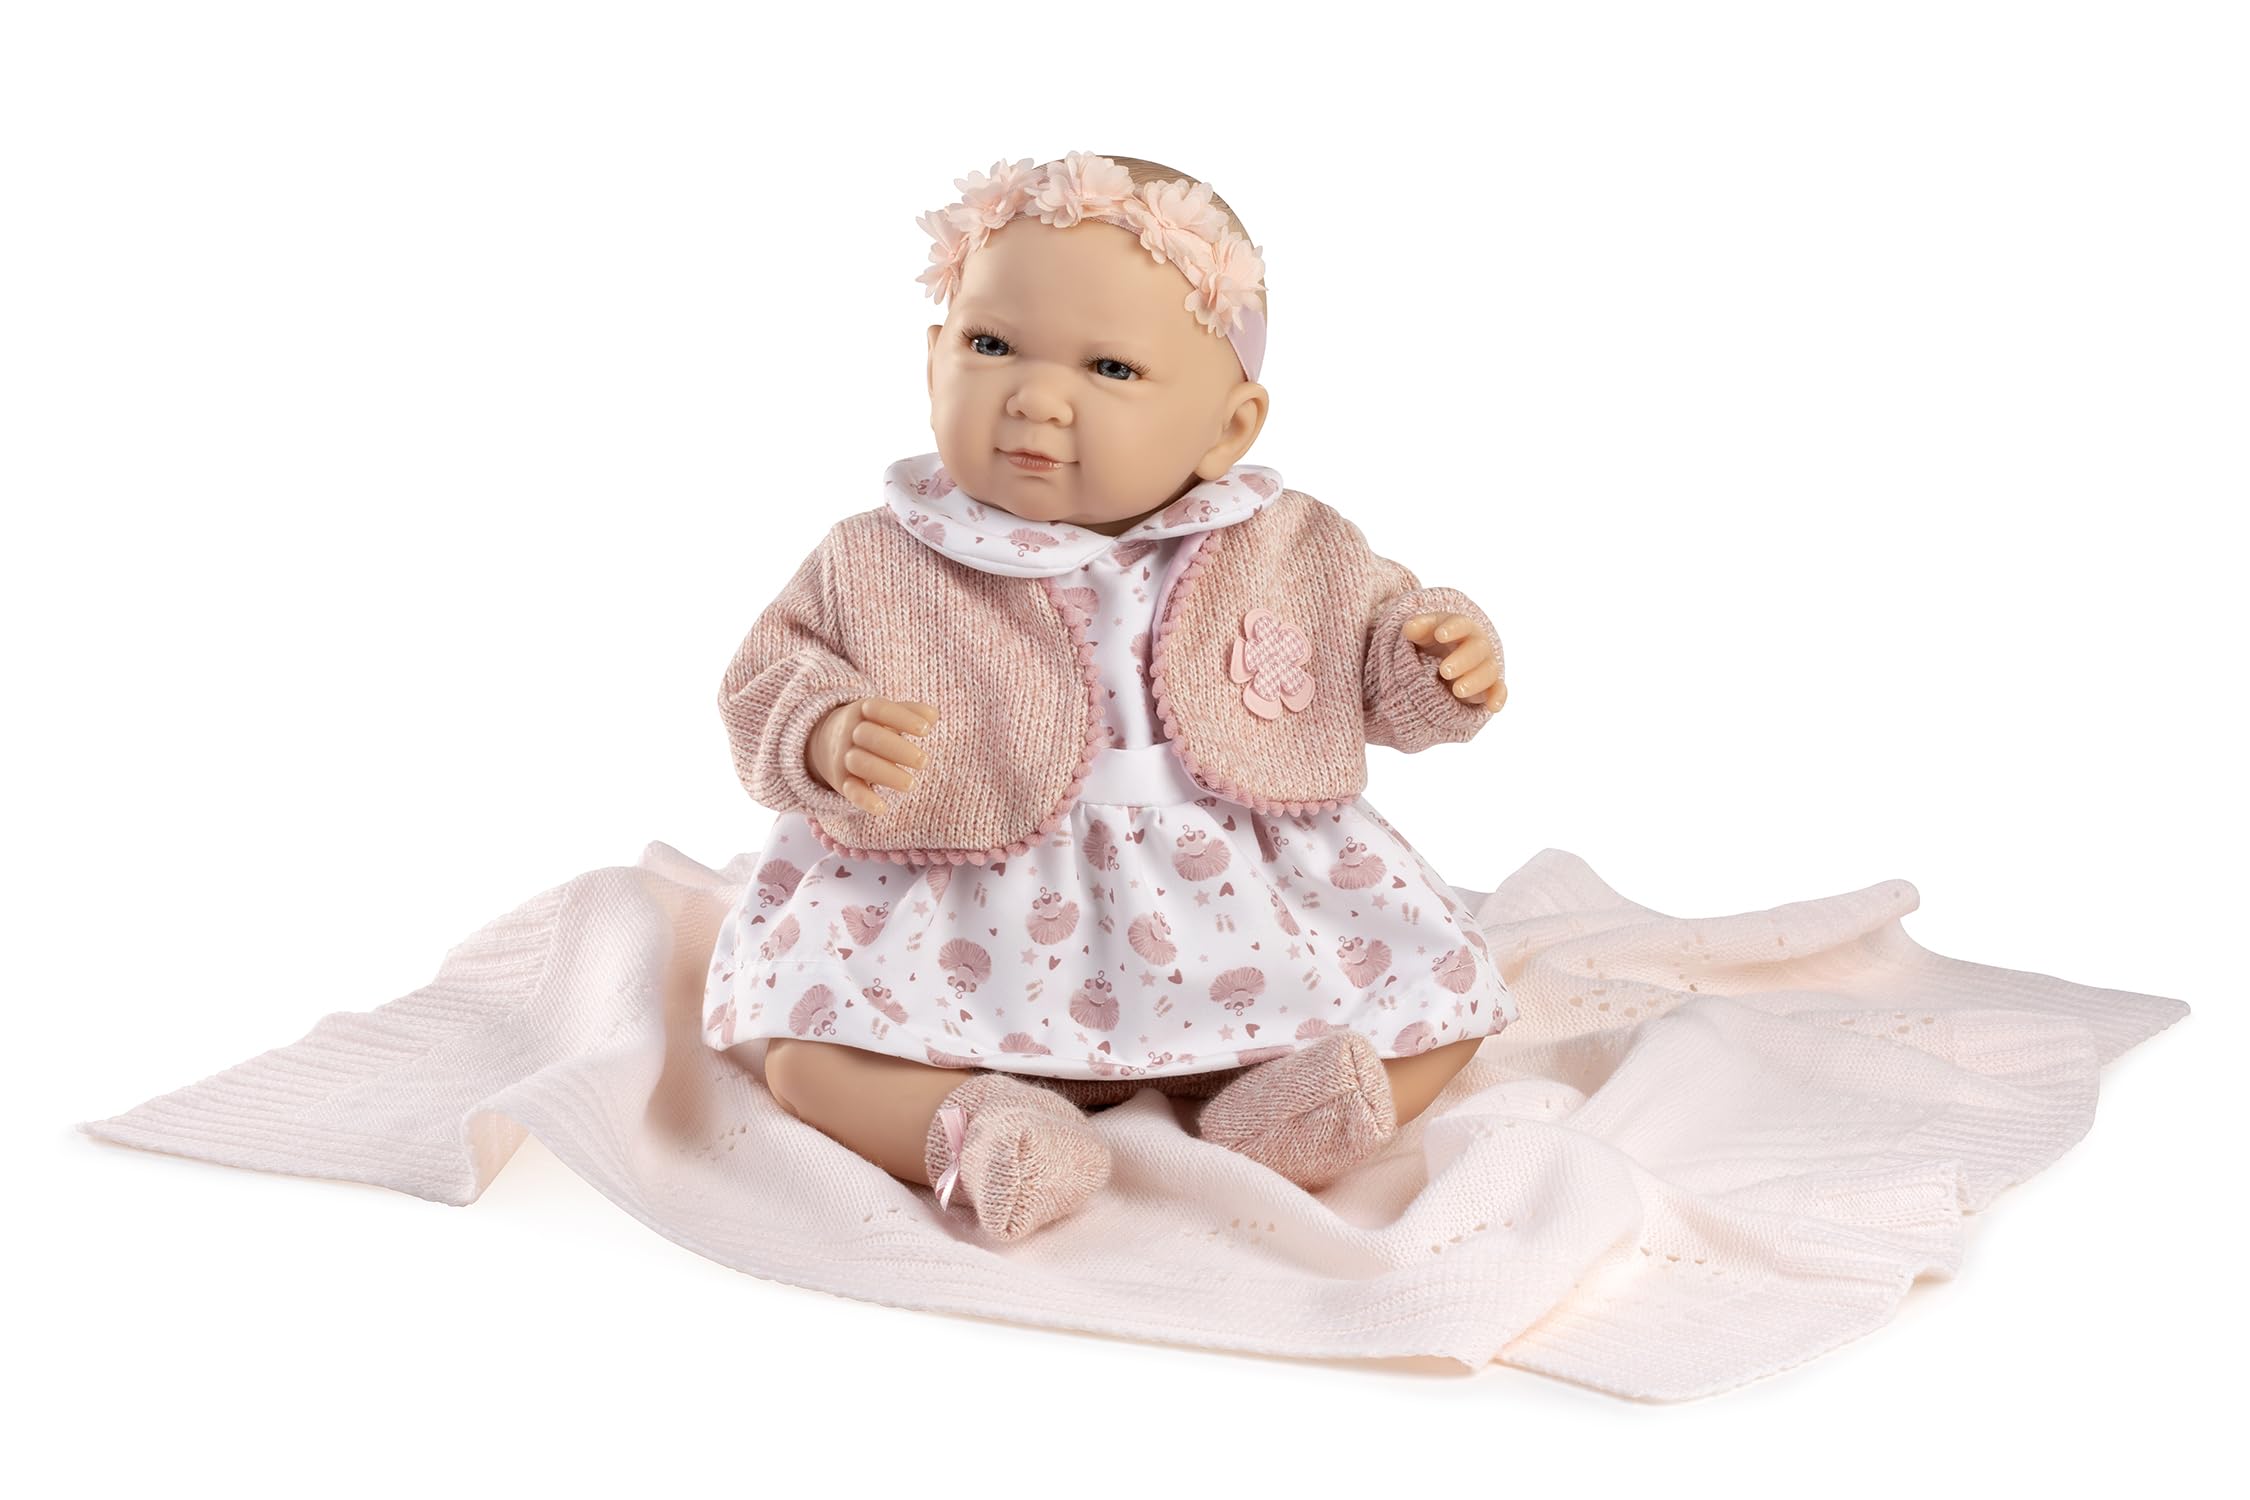 Berbesa Mein Kleiner Reborn, Puppe mit rosa Decke